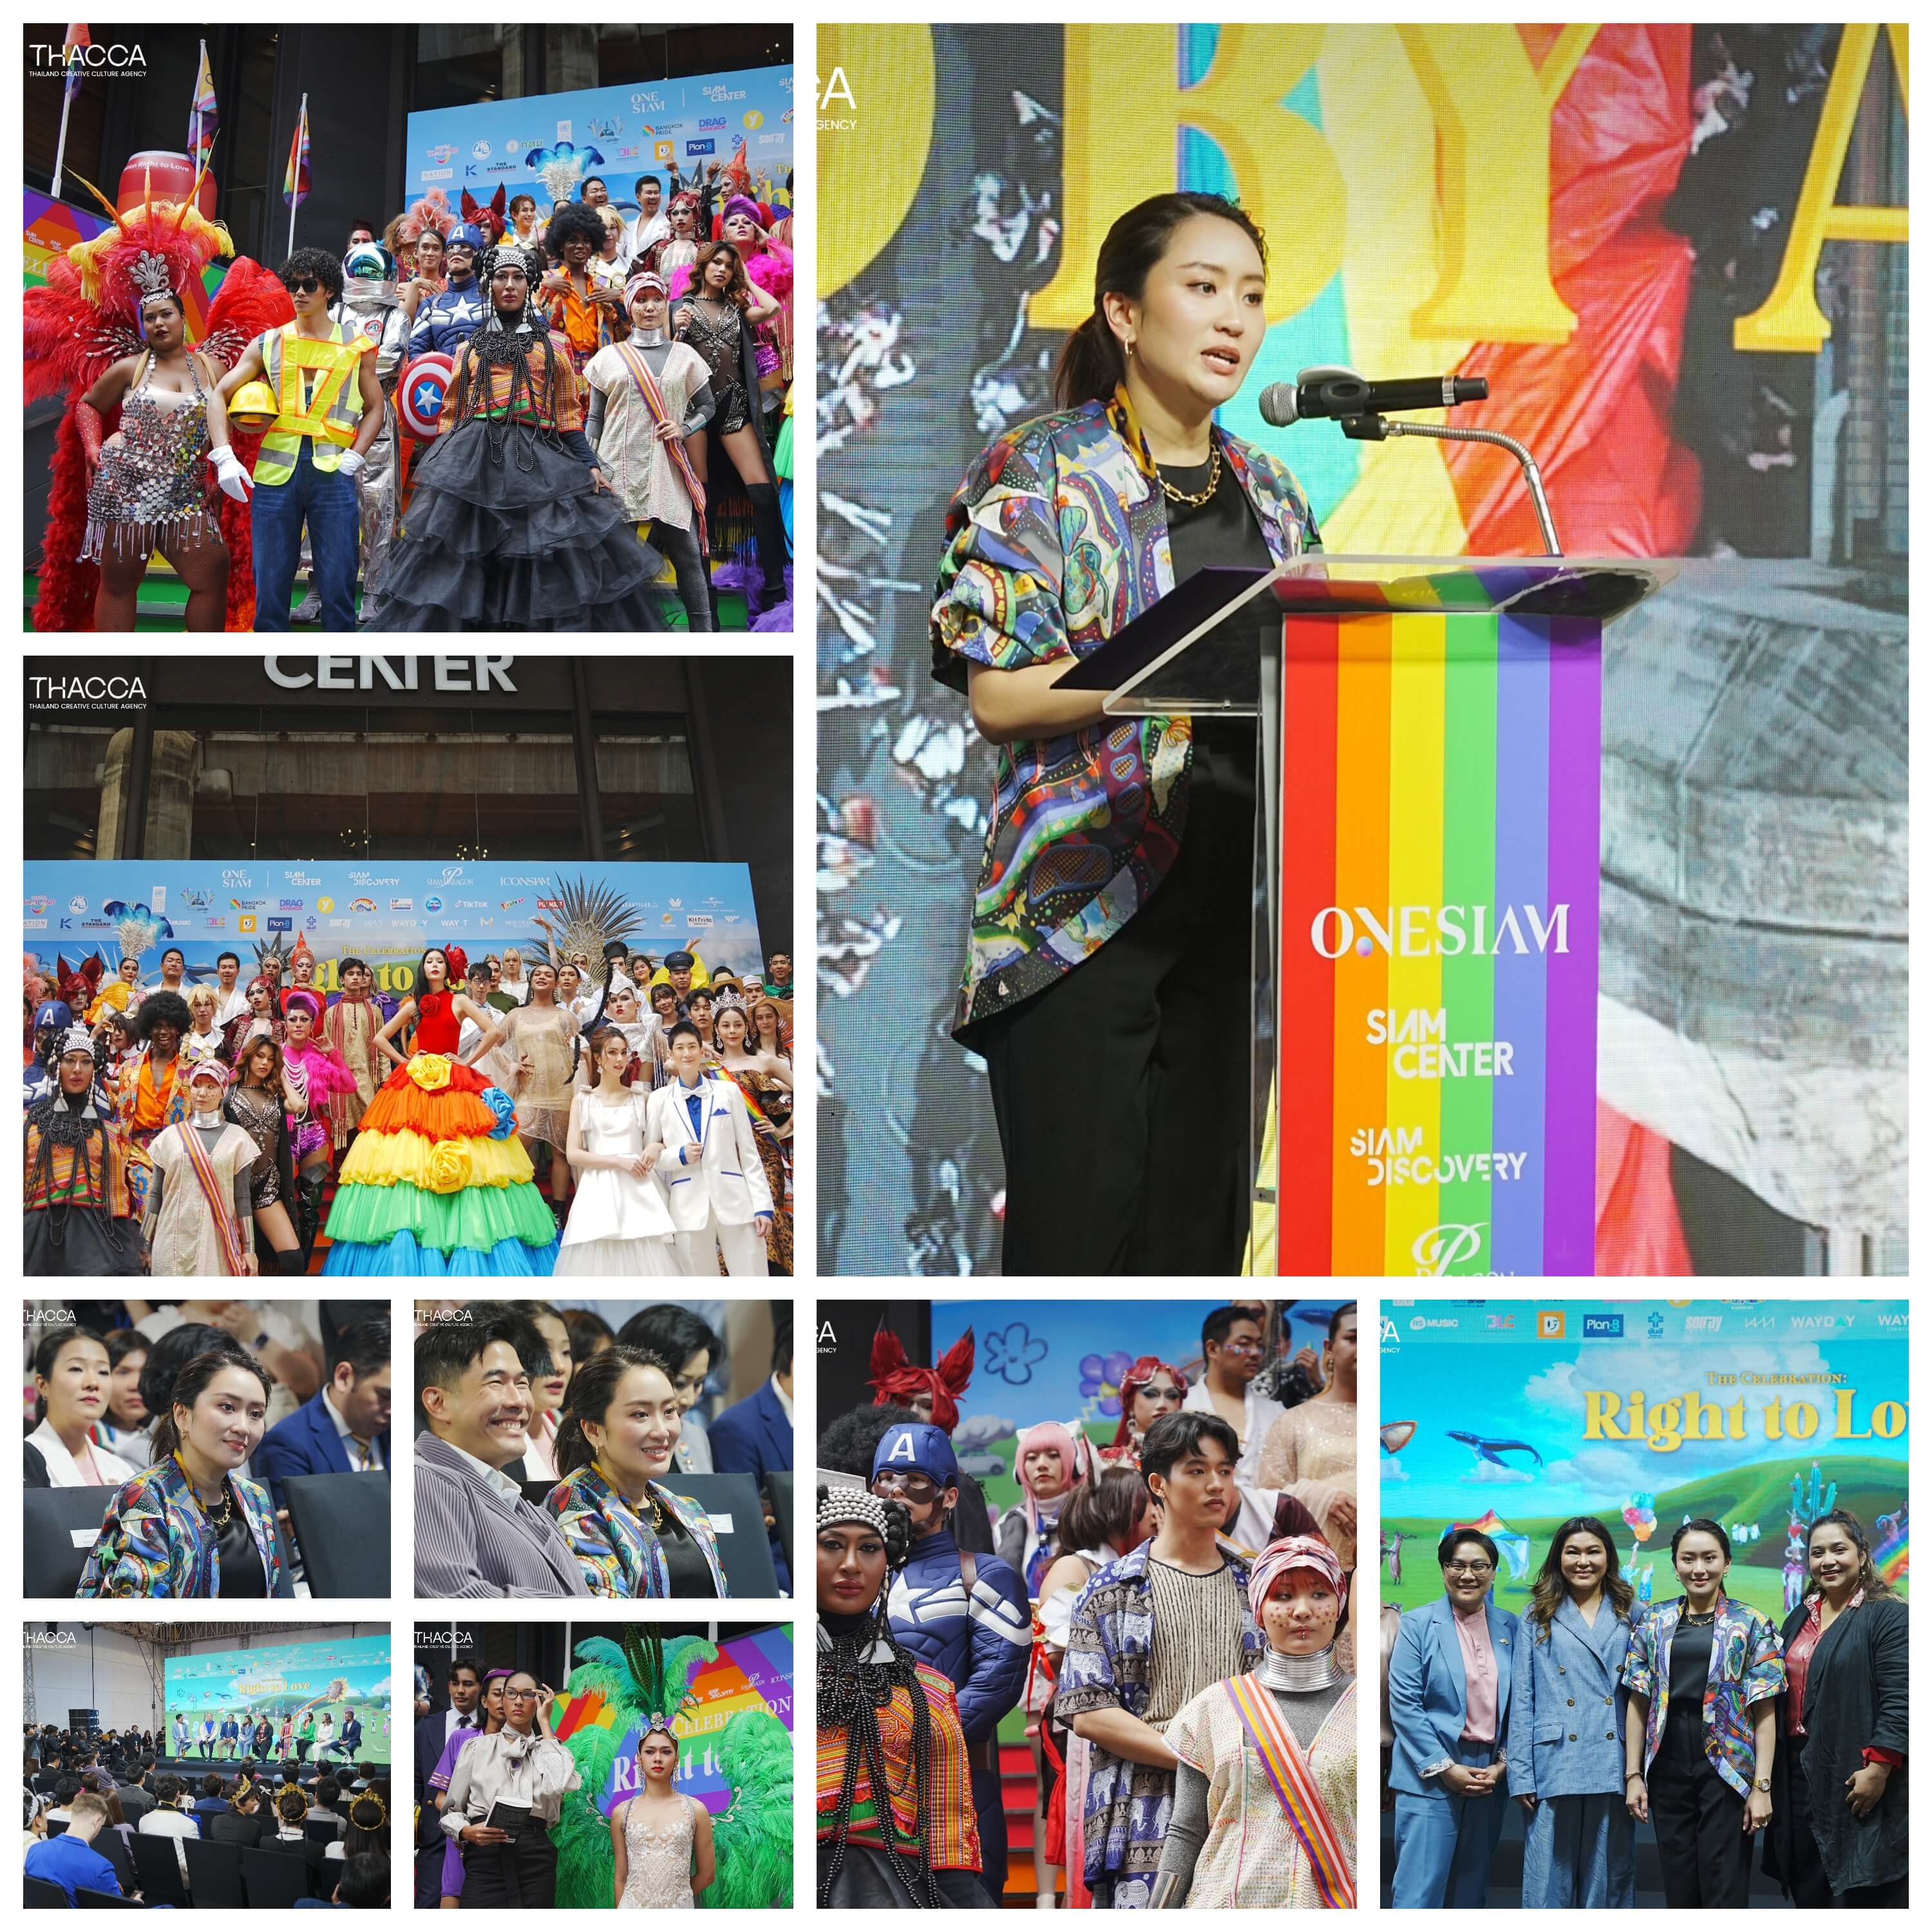 คุณแพทองธาร ชินวัตร ประธานคณะกรรมการพัฒนาซอฟต์พาวเวอร์แห่งชาติ ร่วมงานแถลงข่าว “The Celebration : Right to Love”